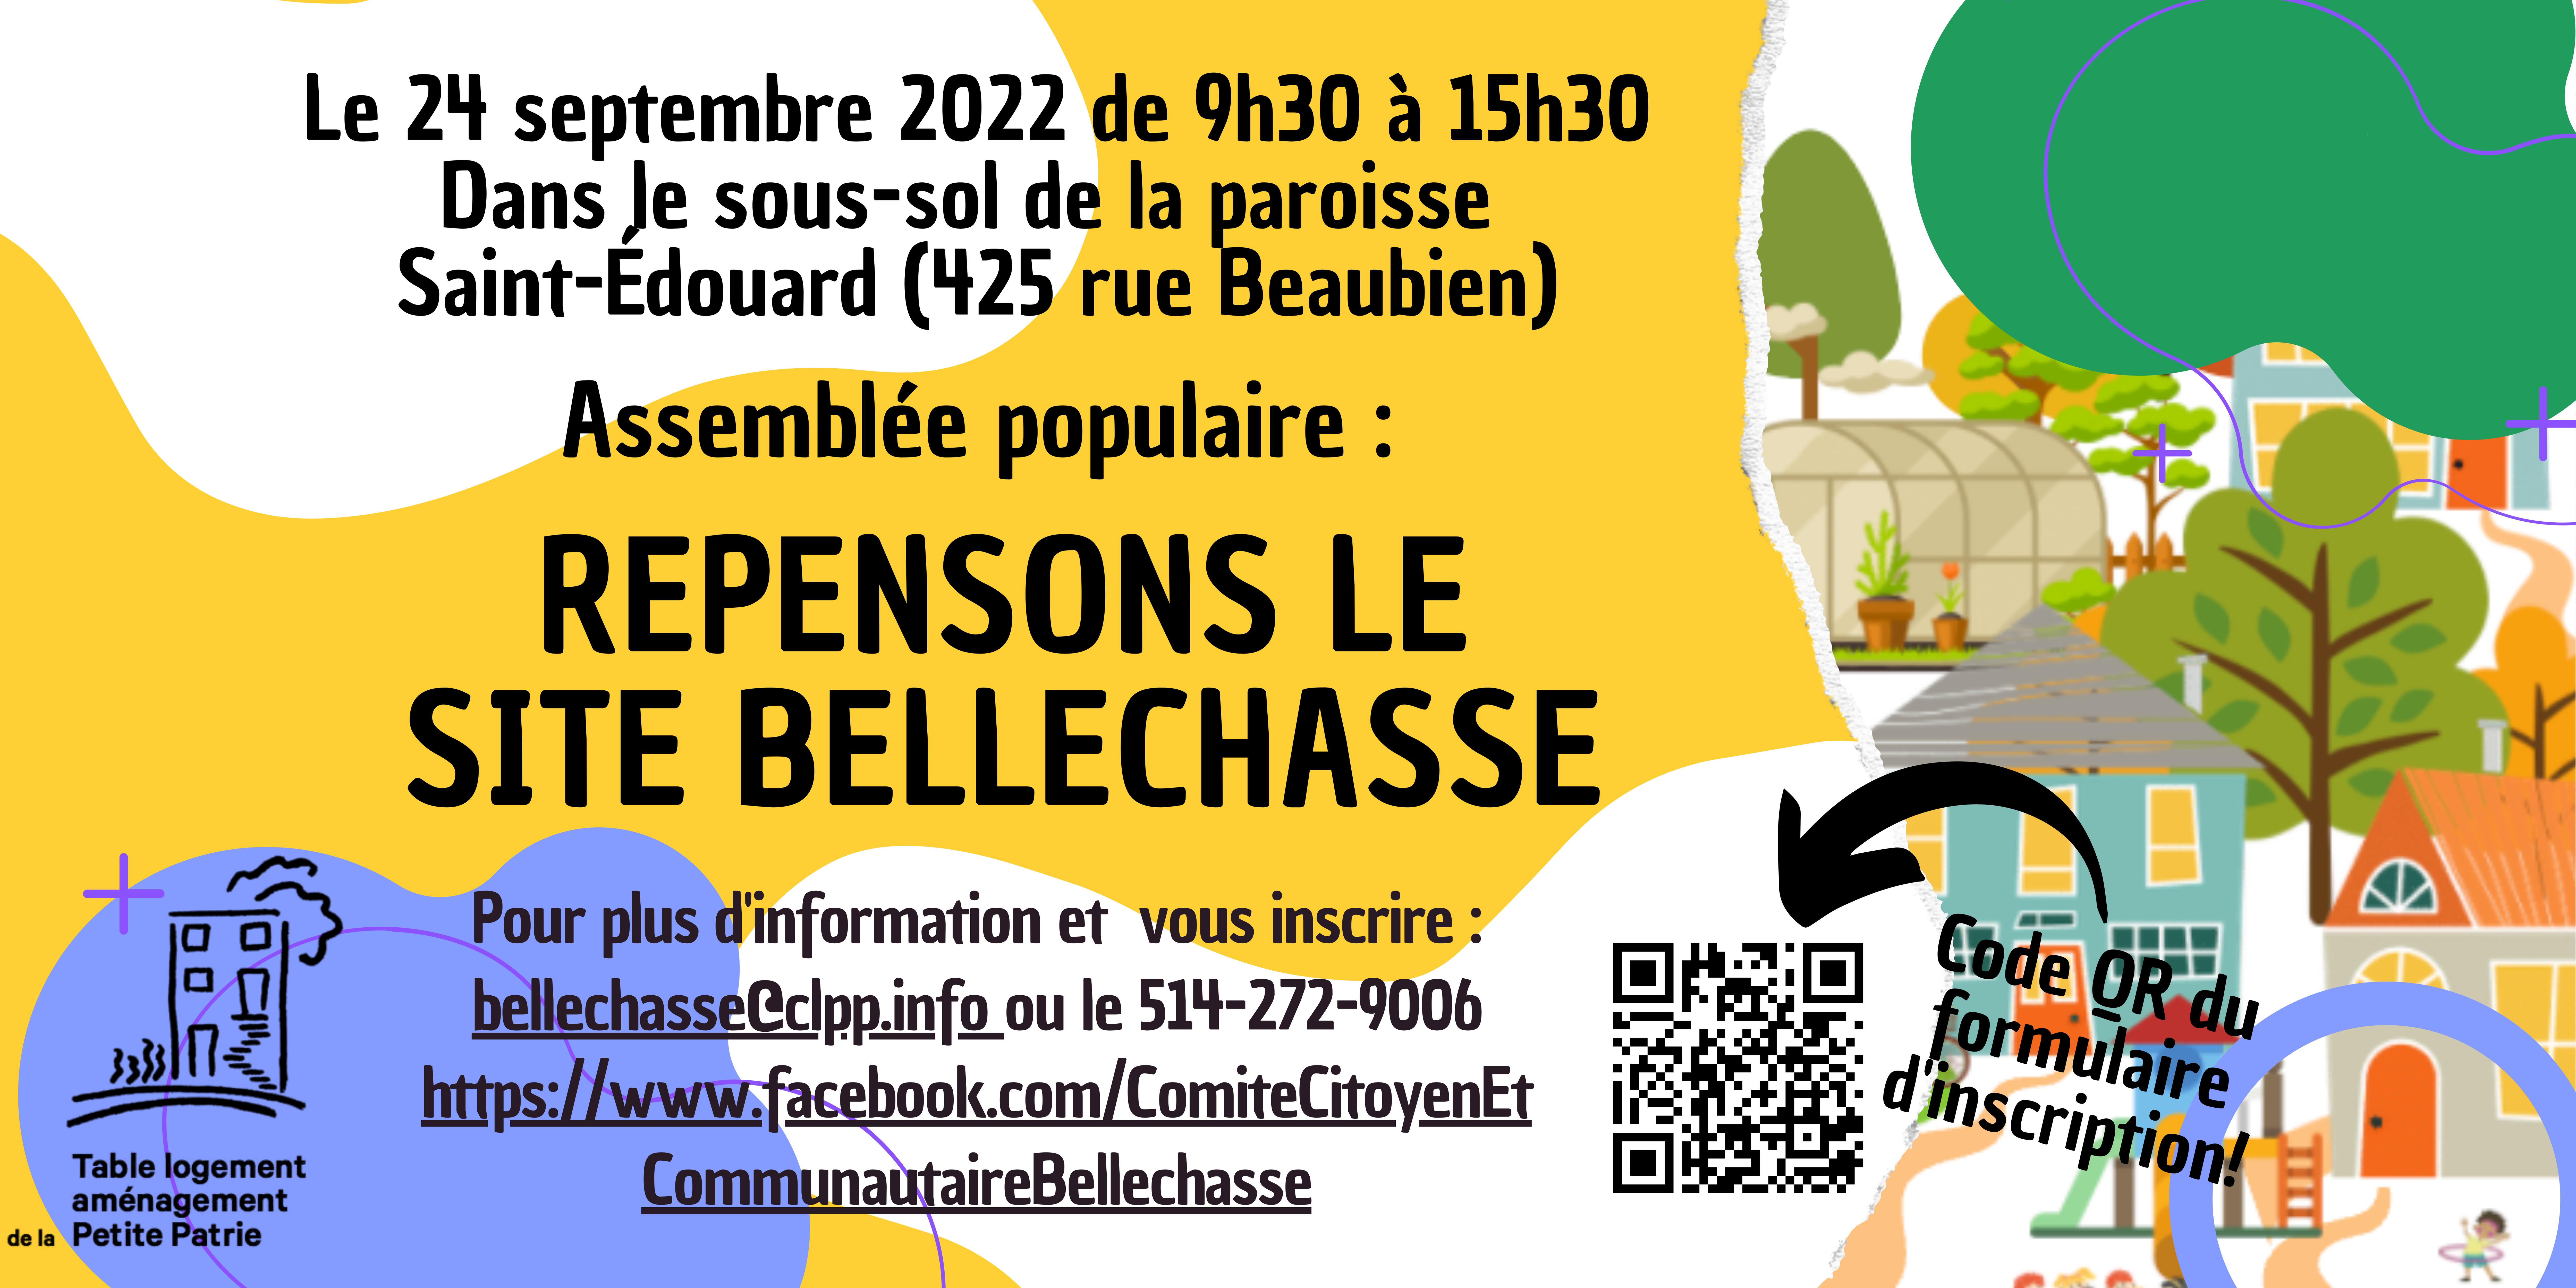 Joignez-vous à nous pour une assemblée populaire sur l’aménagement du site Bellechasse le 24 septembre 2022!